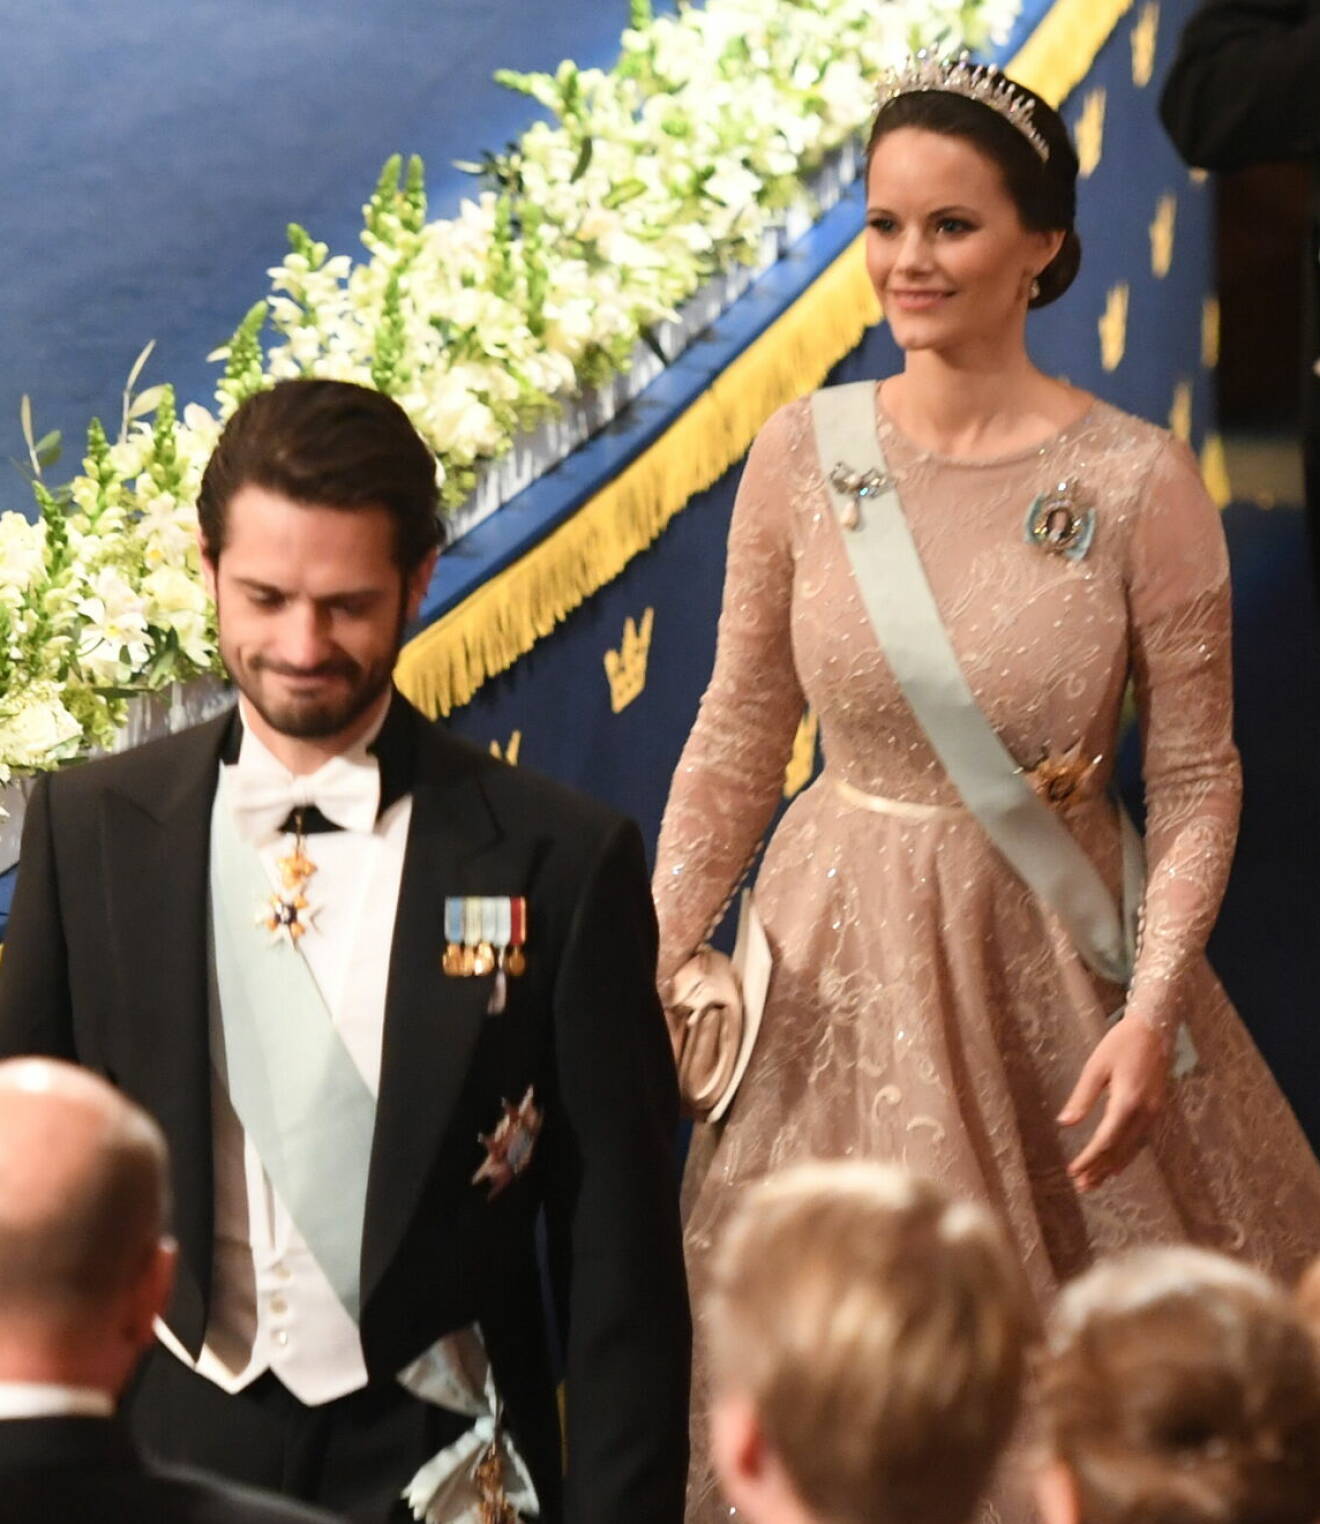 Prinsessan Sofia på Nobel 2017 i puderrosa klänning från Ida Lanto